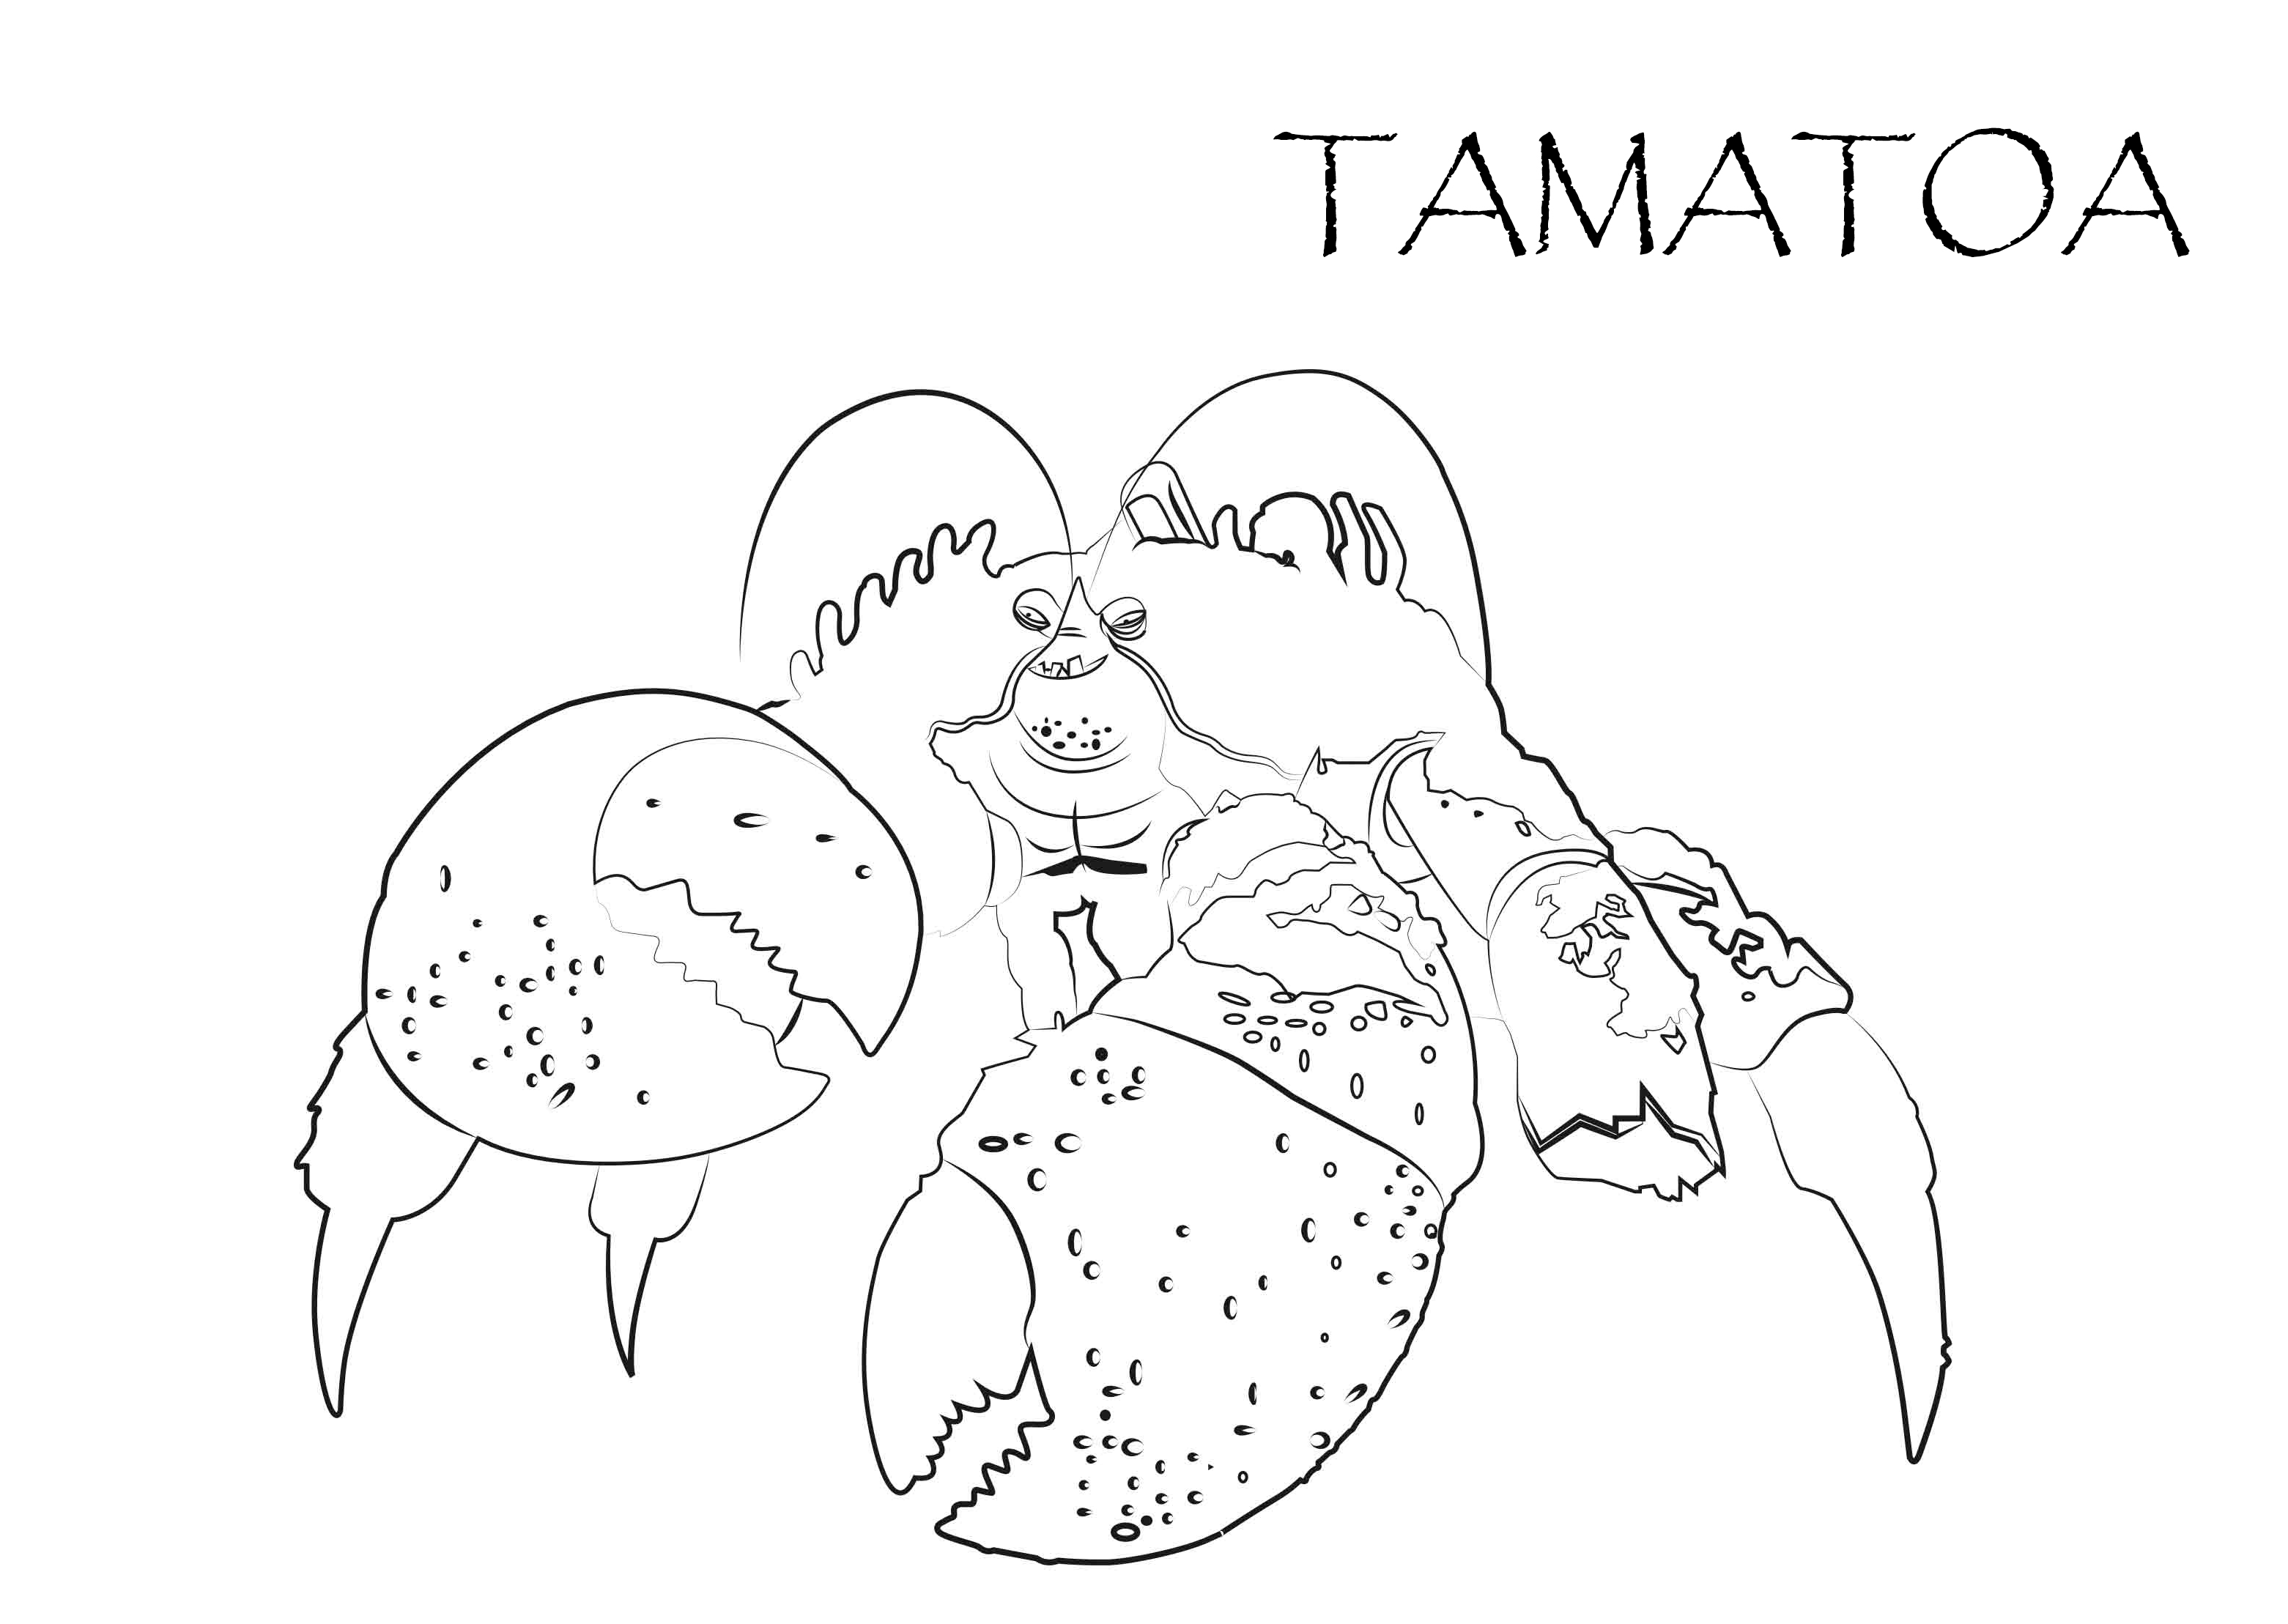 Dibujo para colorear del personaje del cangrejo Tamatoa de la película Vaiana Un de